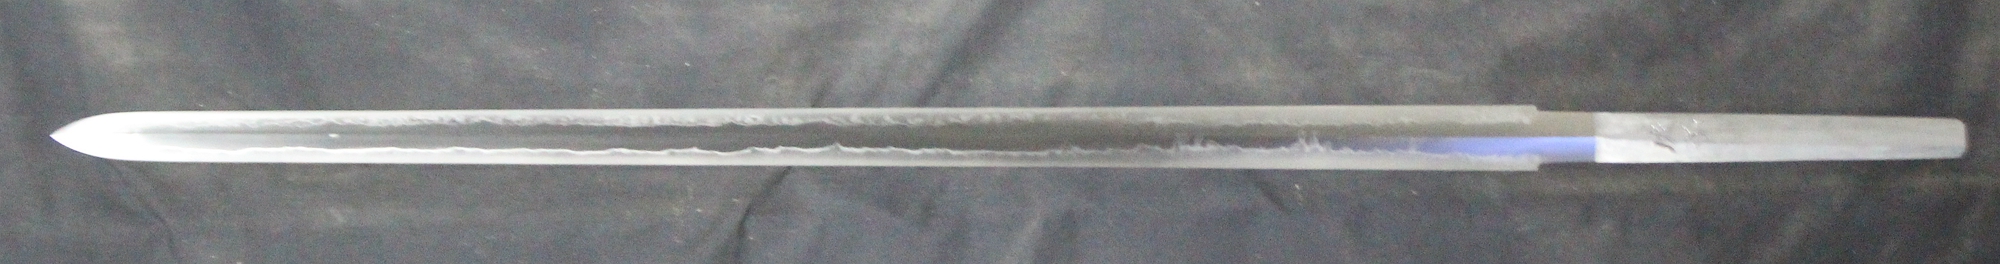 2007劍